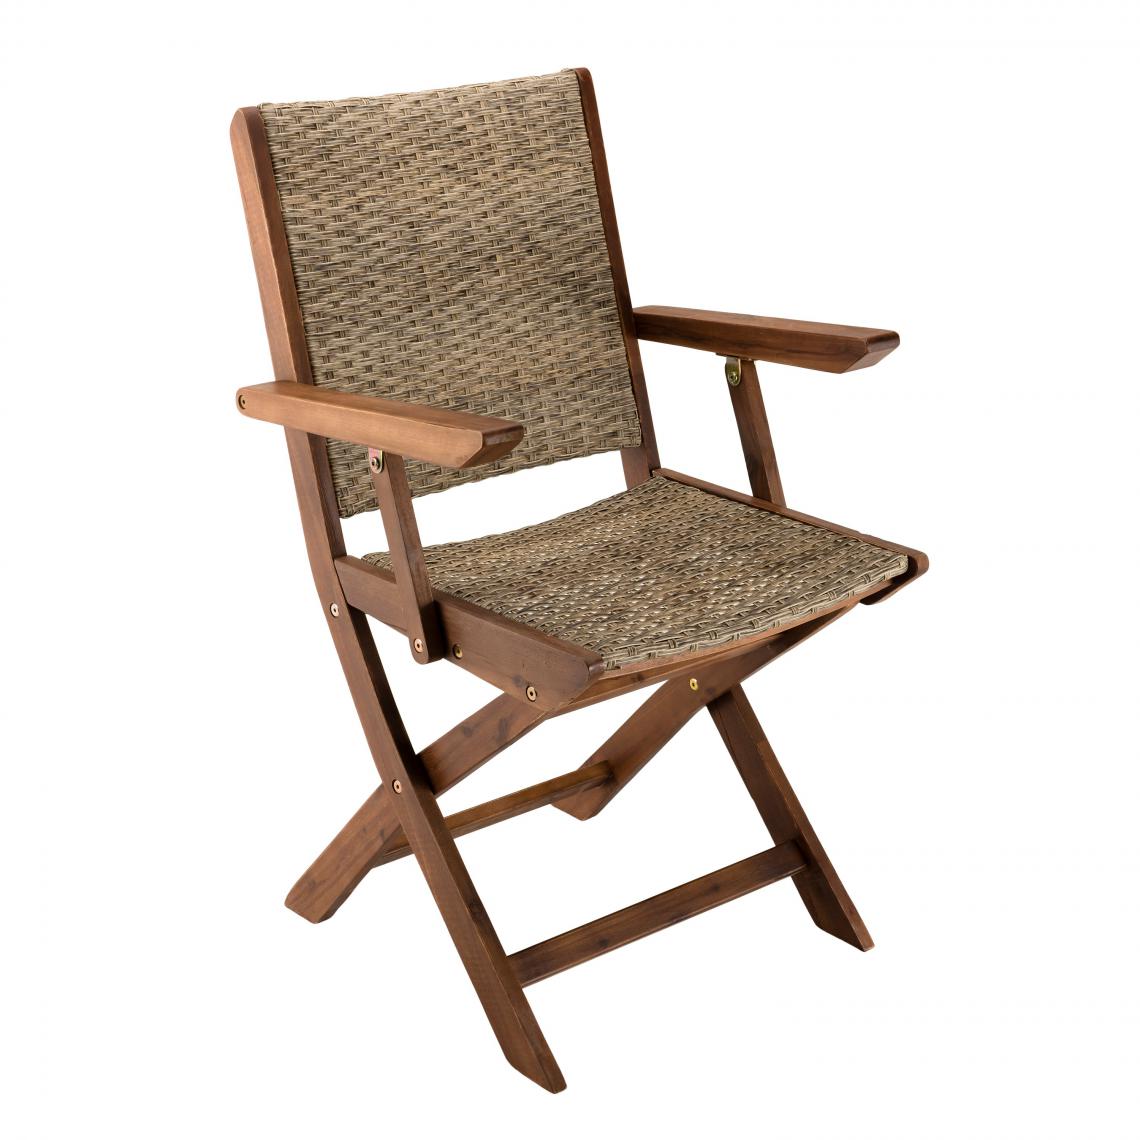 MACABANE - Lot de 2 fauteuils pliants bois Acacia et rotin synthétique - Chaises de jardin